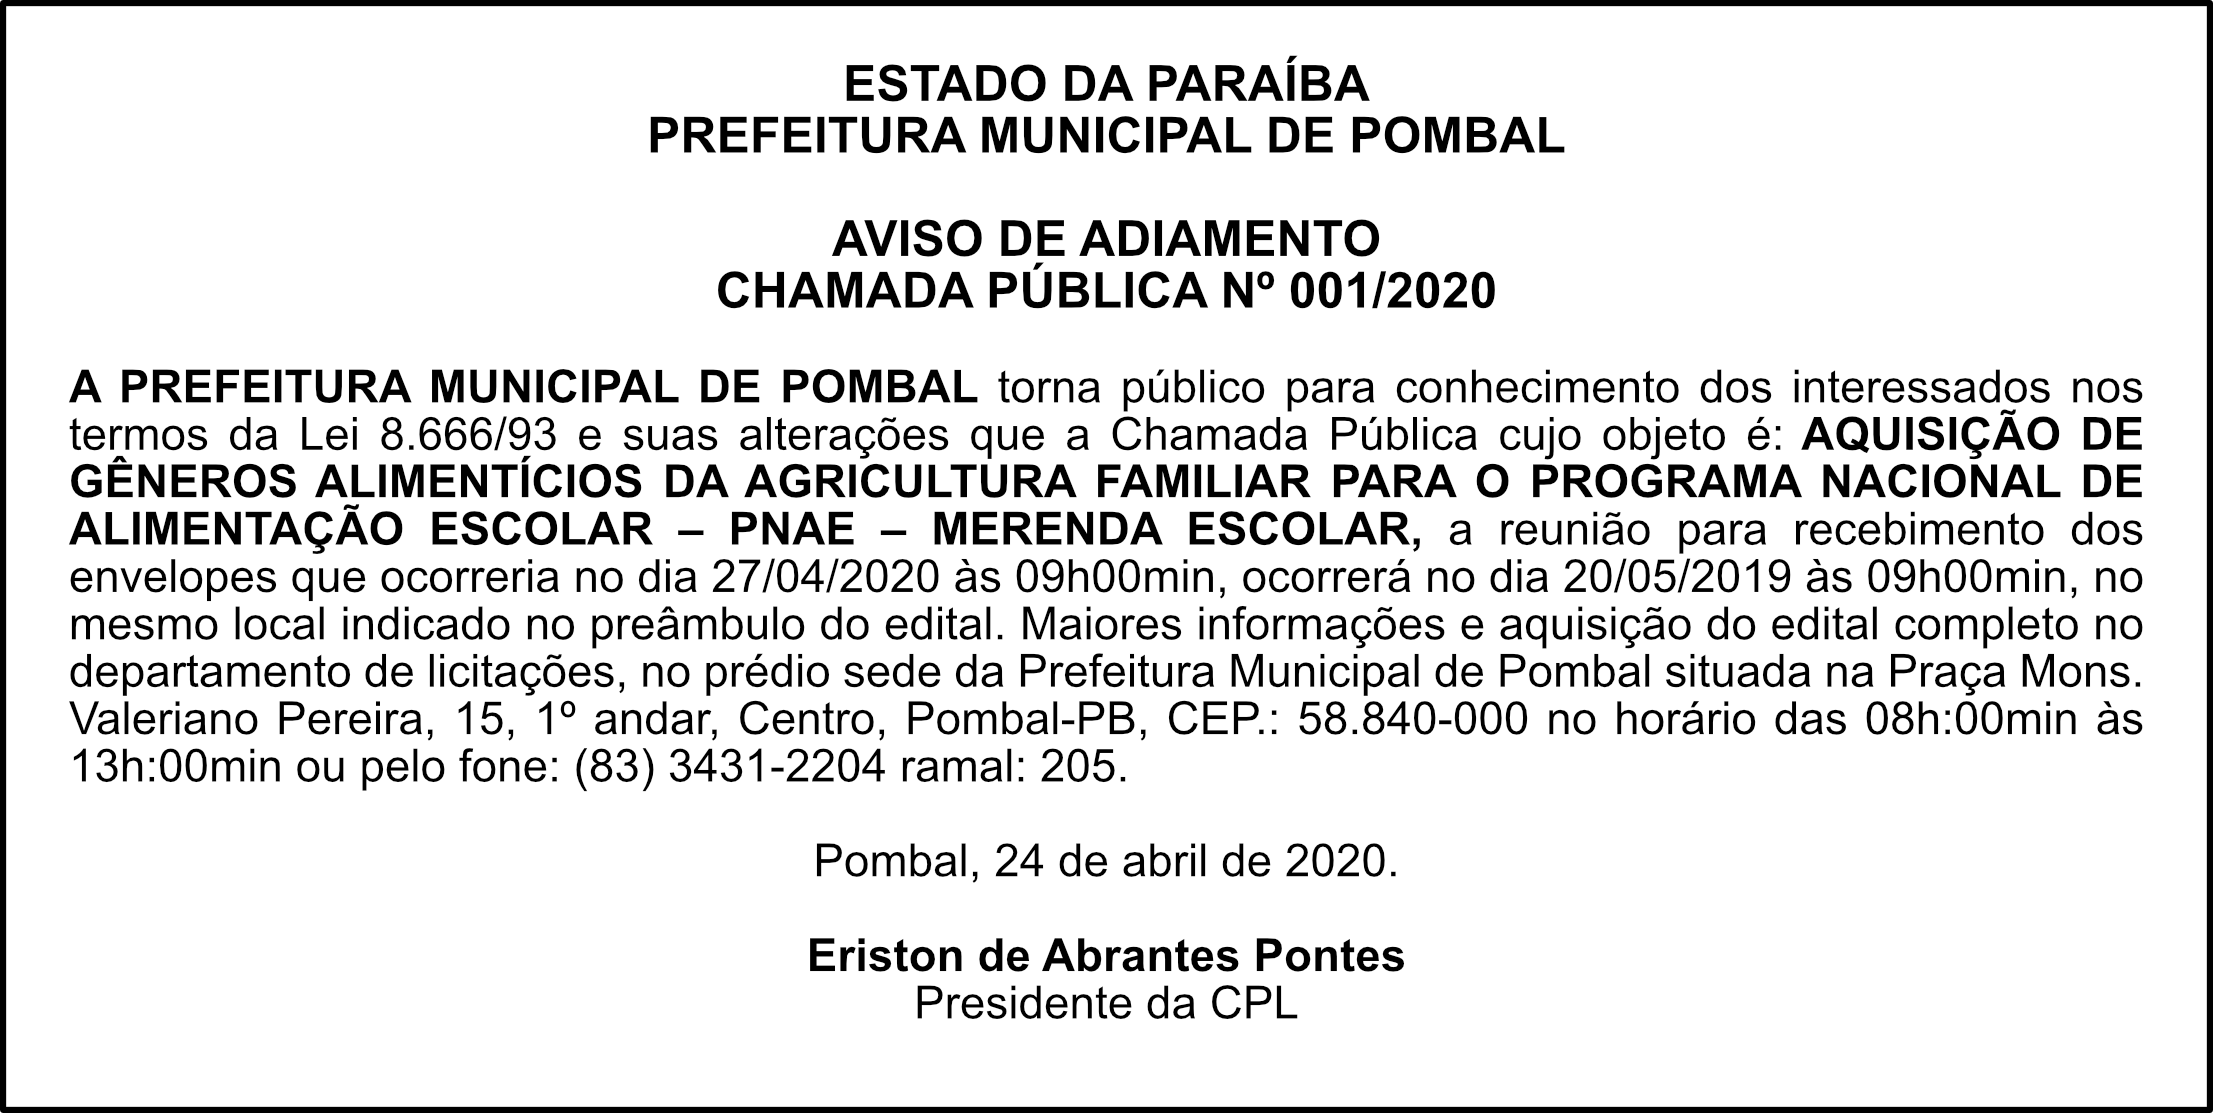 PREFEITURA MUNICIPAL DE POMBAL – AVISO DE ADIAMENTO – CHAMADA PÚBLICA Nº 001/2020